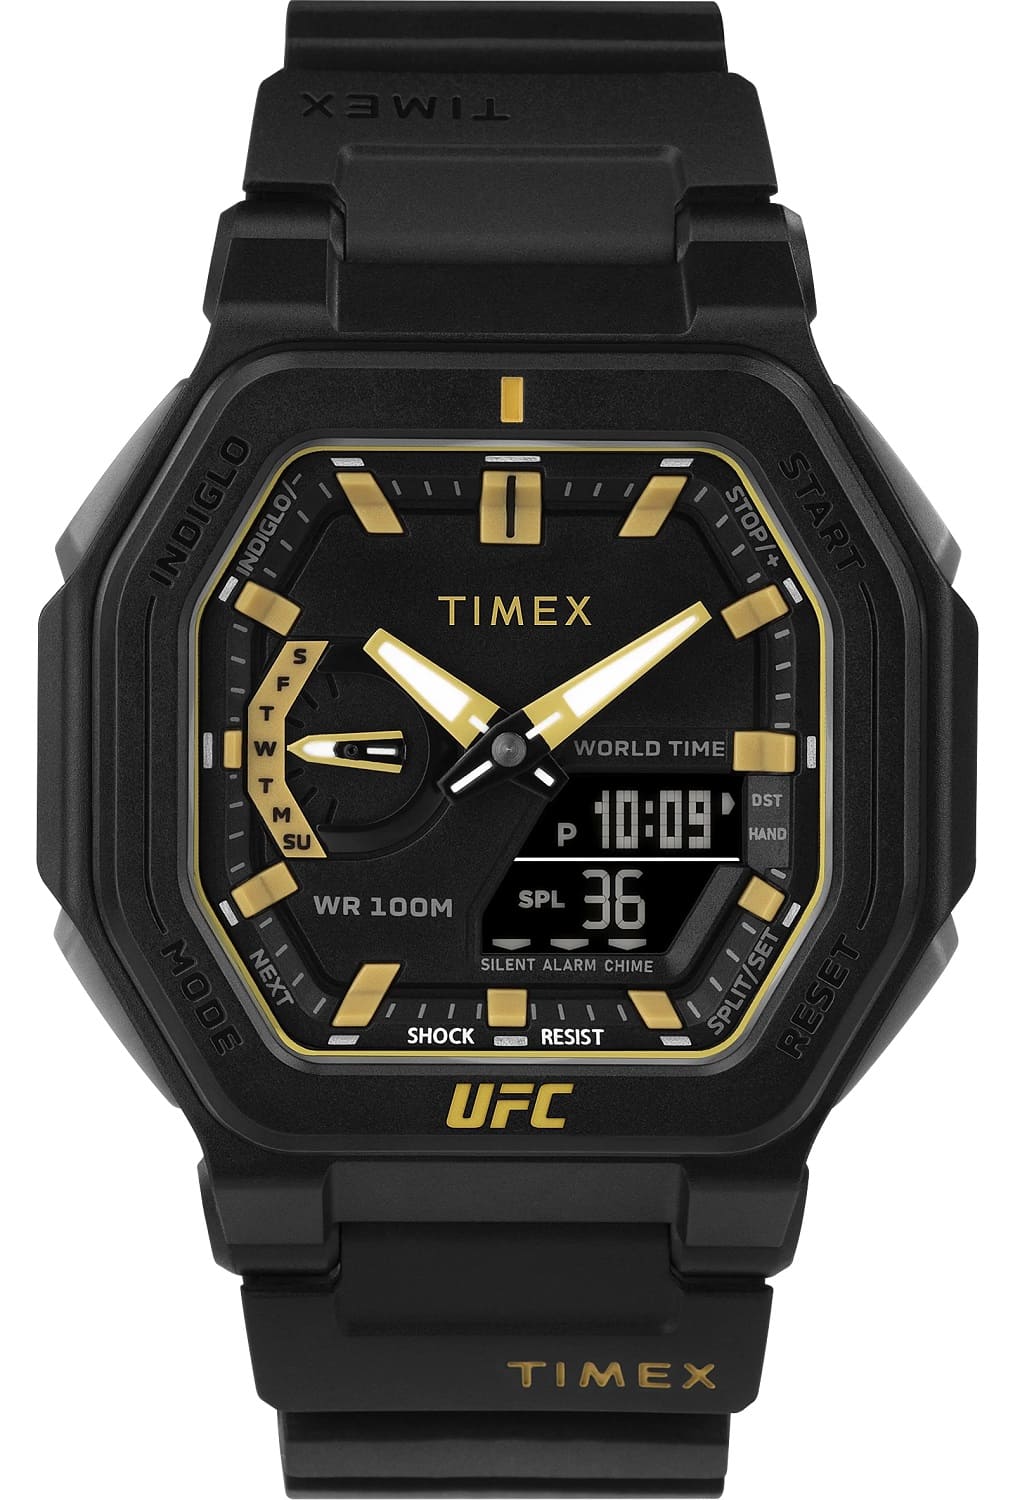   Timex TW2V55300  